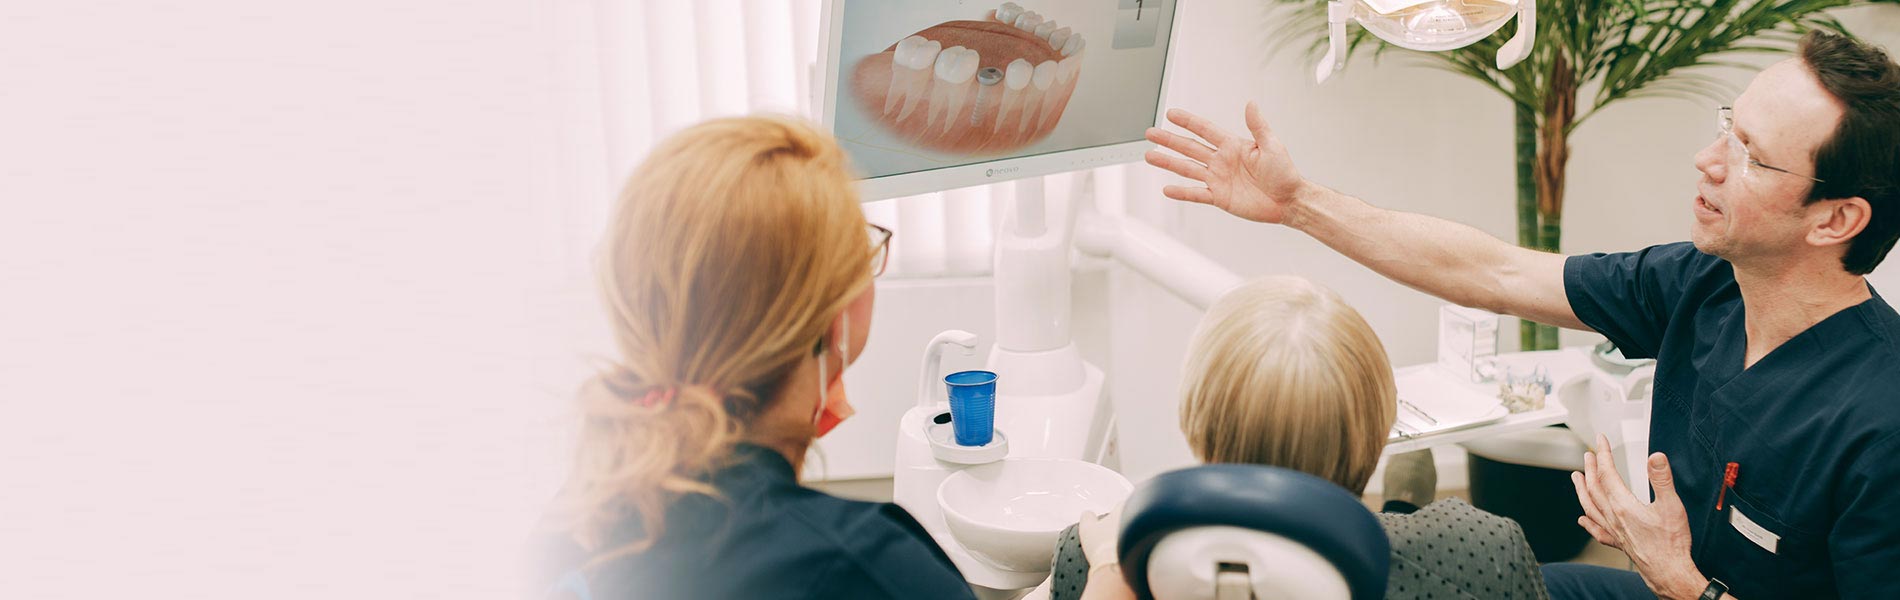 Dr. Sven Kurth, Implantologe aus Falkensee, zeigt die Möglichkeiten mit Zahnimplantaten.